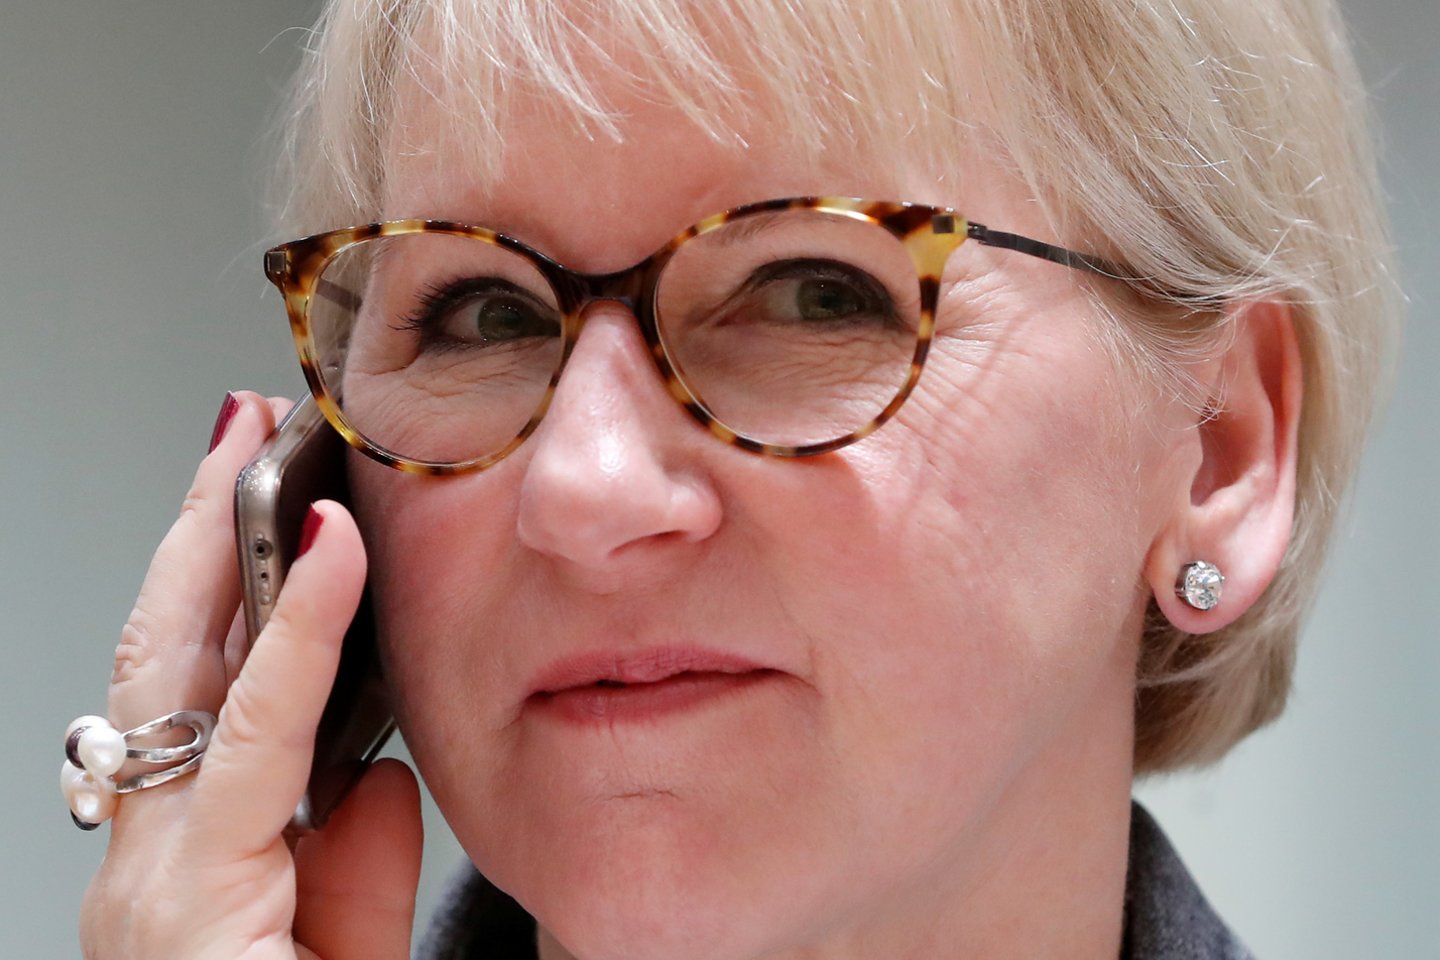  Švedijos užsienio reikalų ministrė Margot Wallstrom penktadienį paskelbė, jog traukiasi iš savo posto, kad daugiau laiko skirtų šeimai.<br> Reuters/Scanpix nuotr.